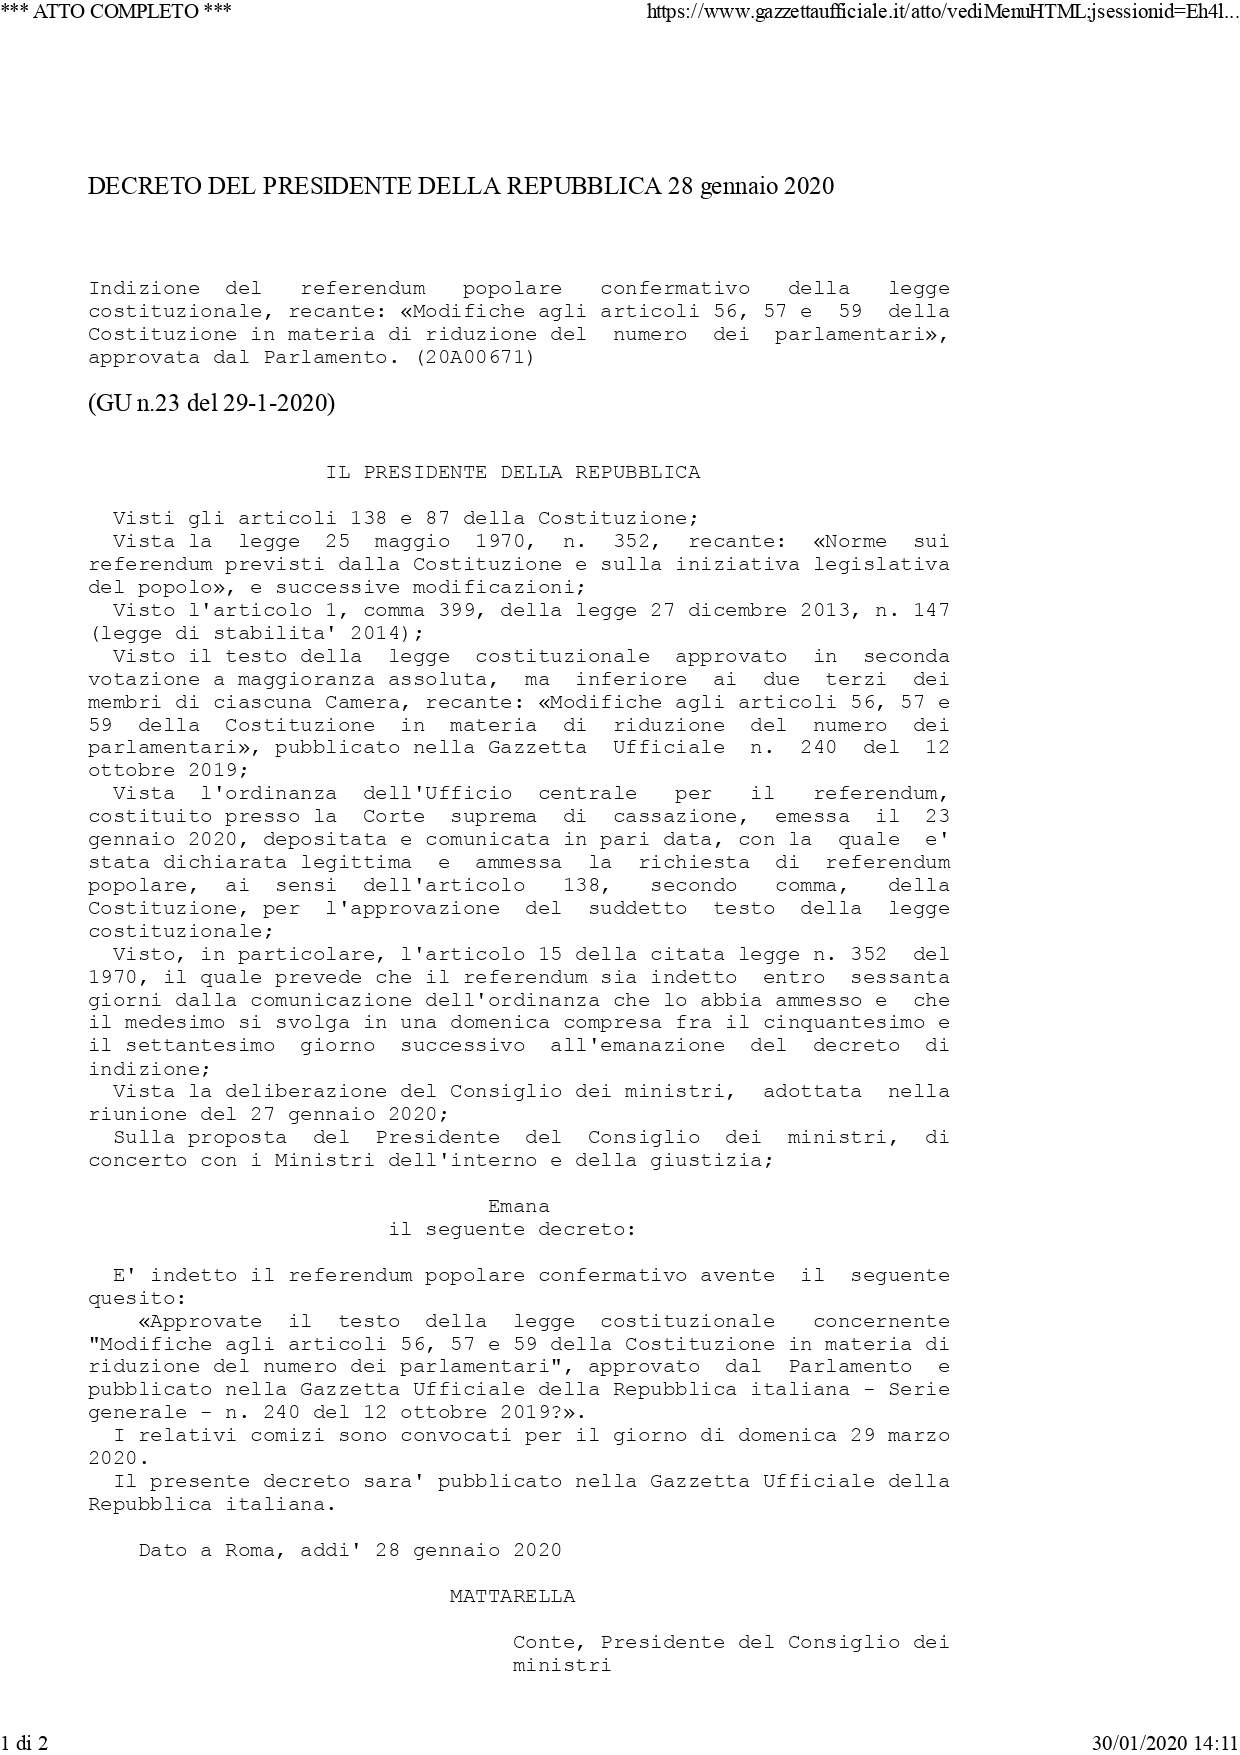 Immagine Referendum 29 marzo 2020: D.P.R. di convocazione dei comizi e tutte le info